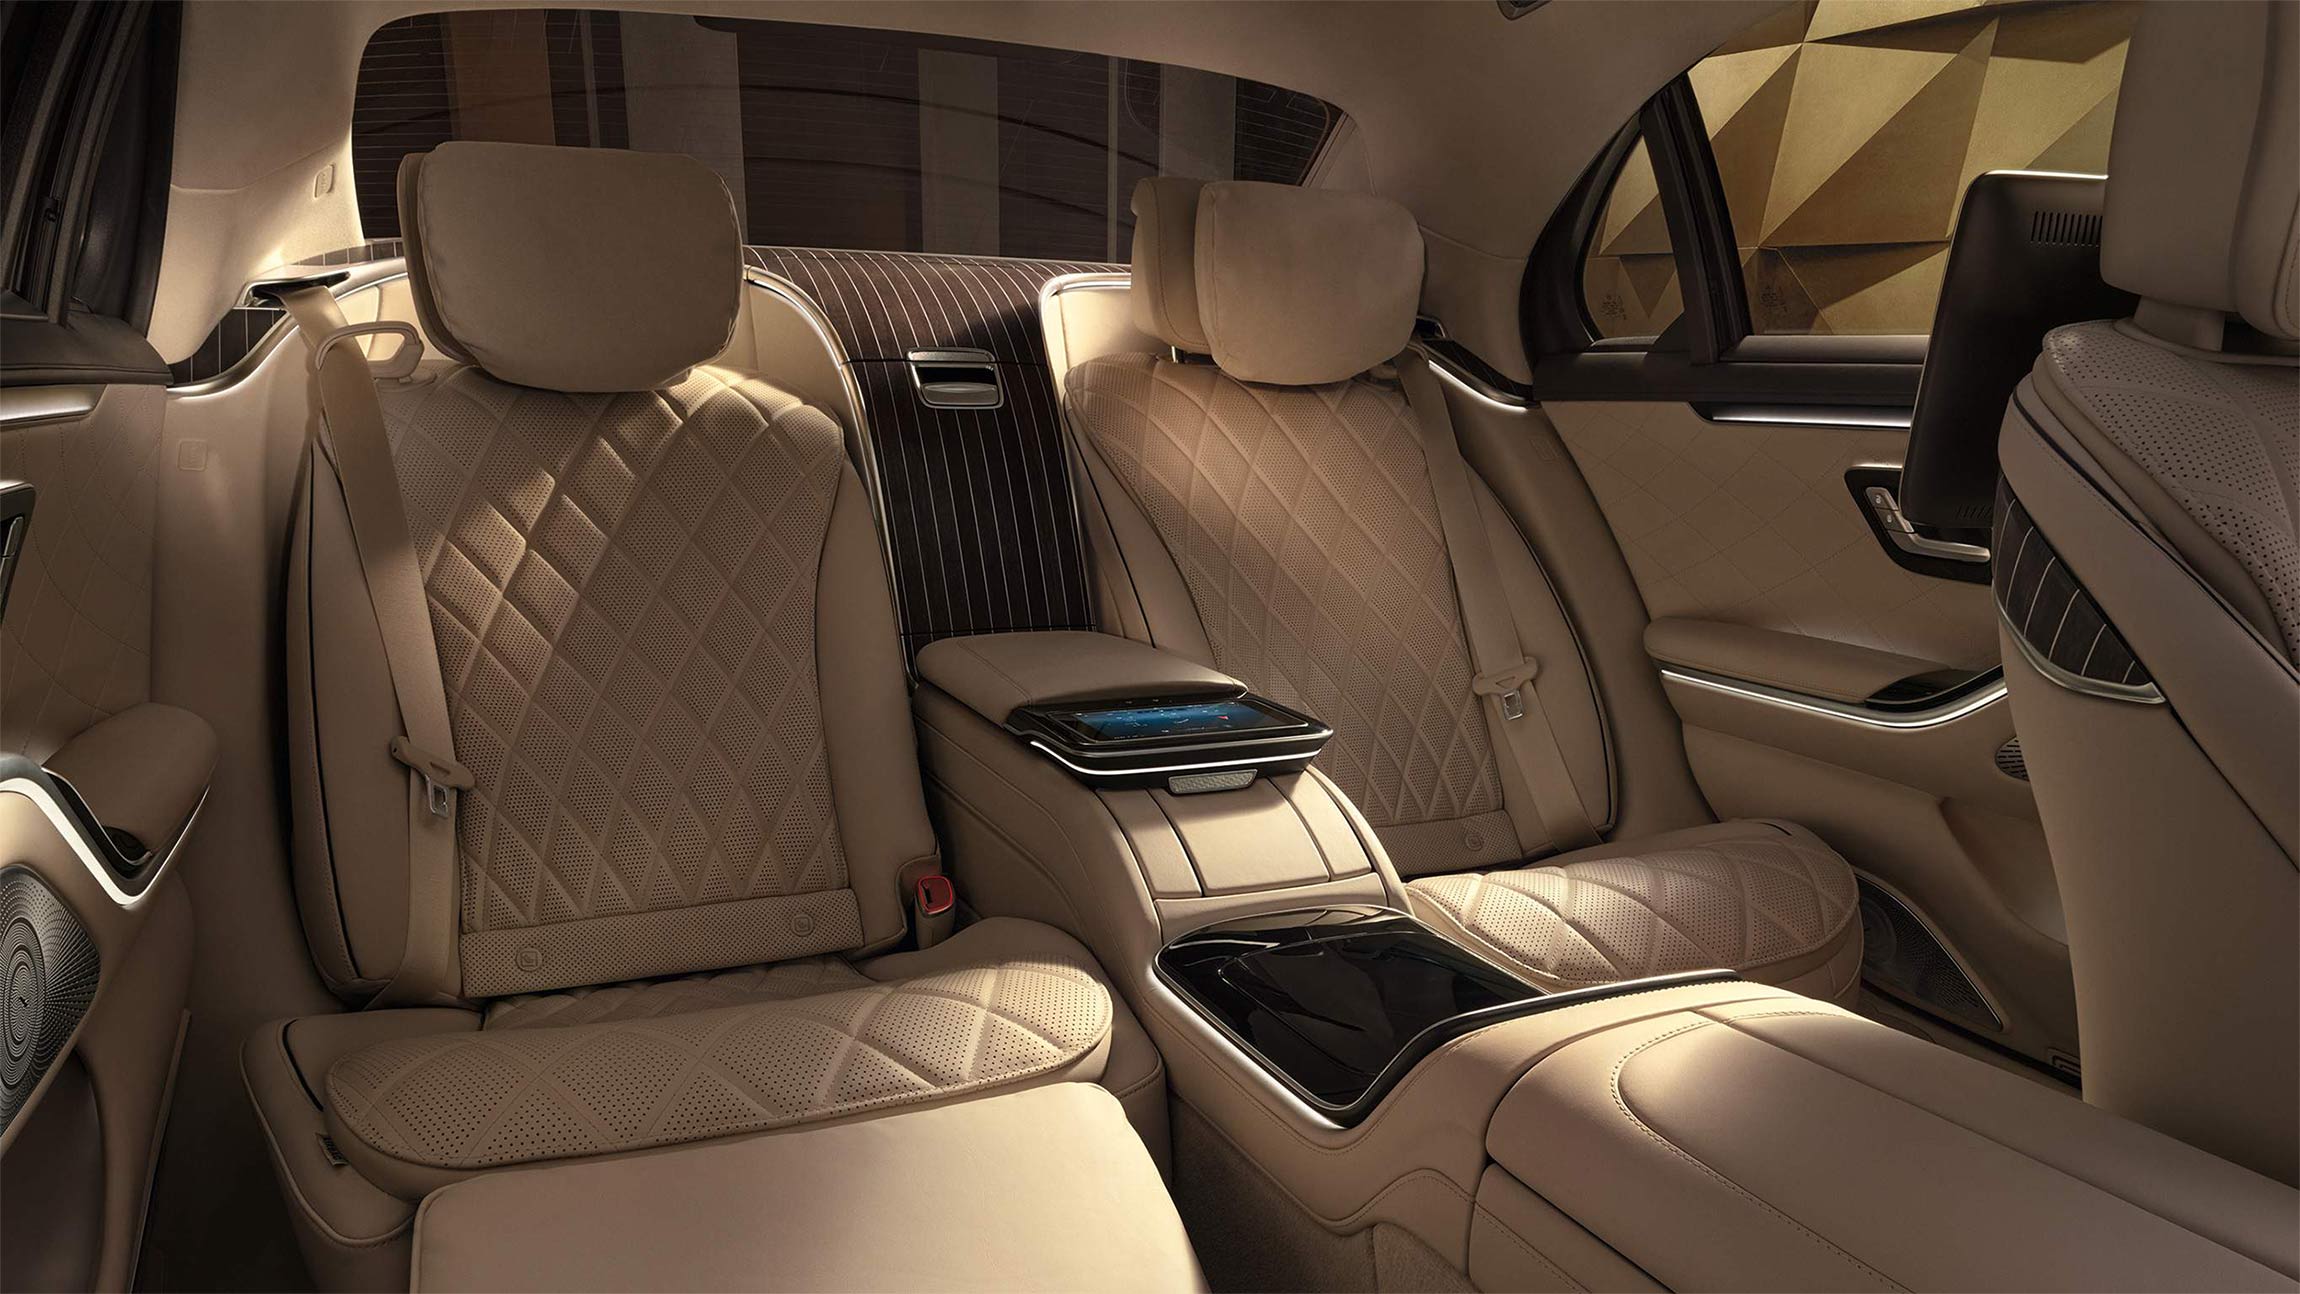 El gran espacio y confort interior que ofrece la Clase S Sedan de Mercedes-Benz